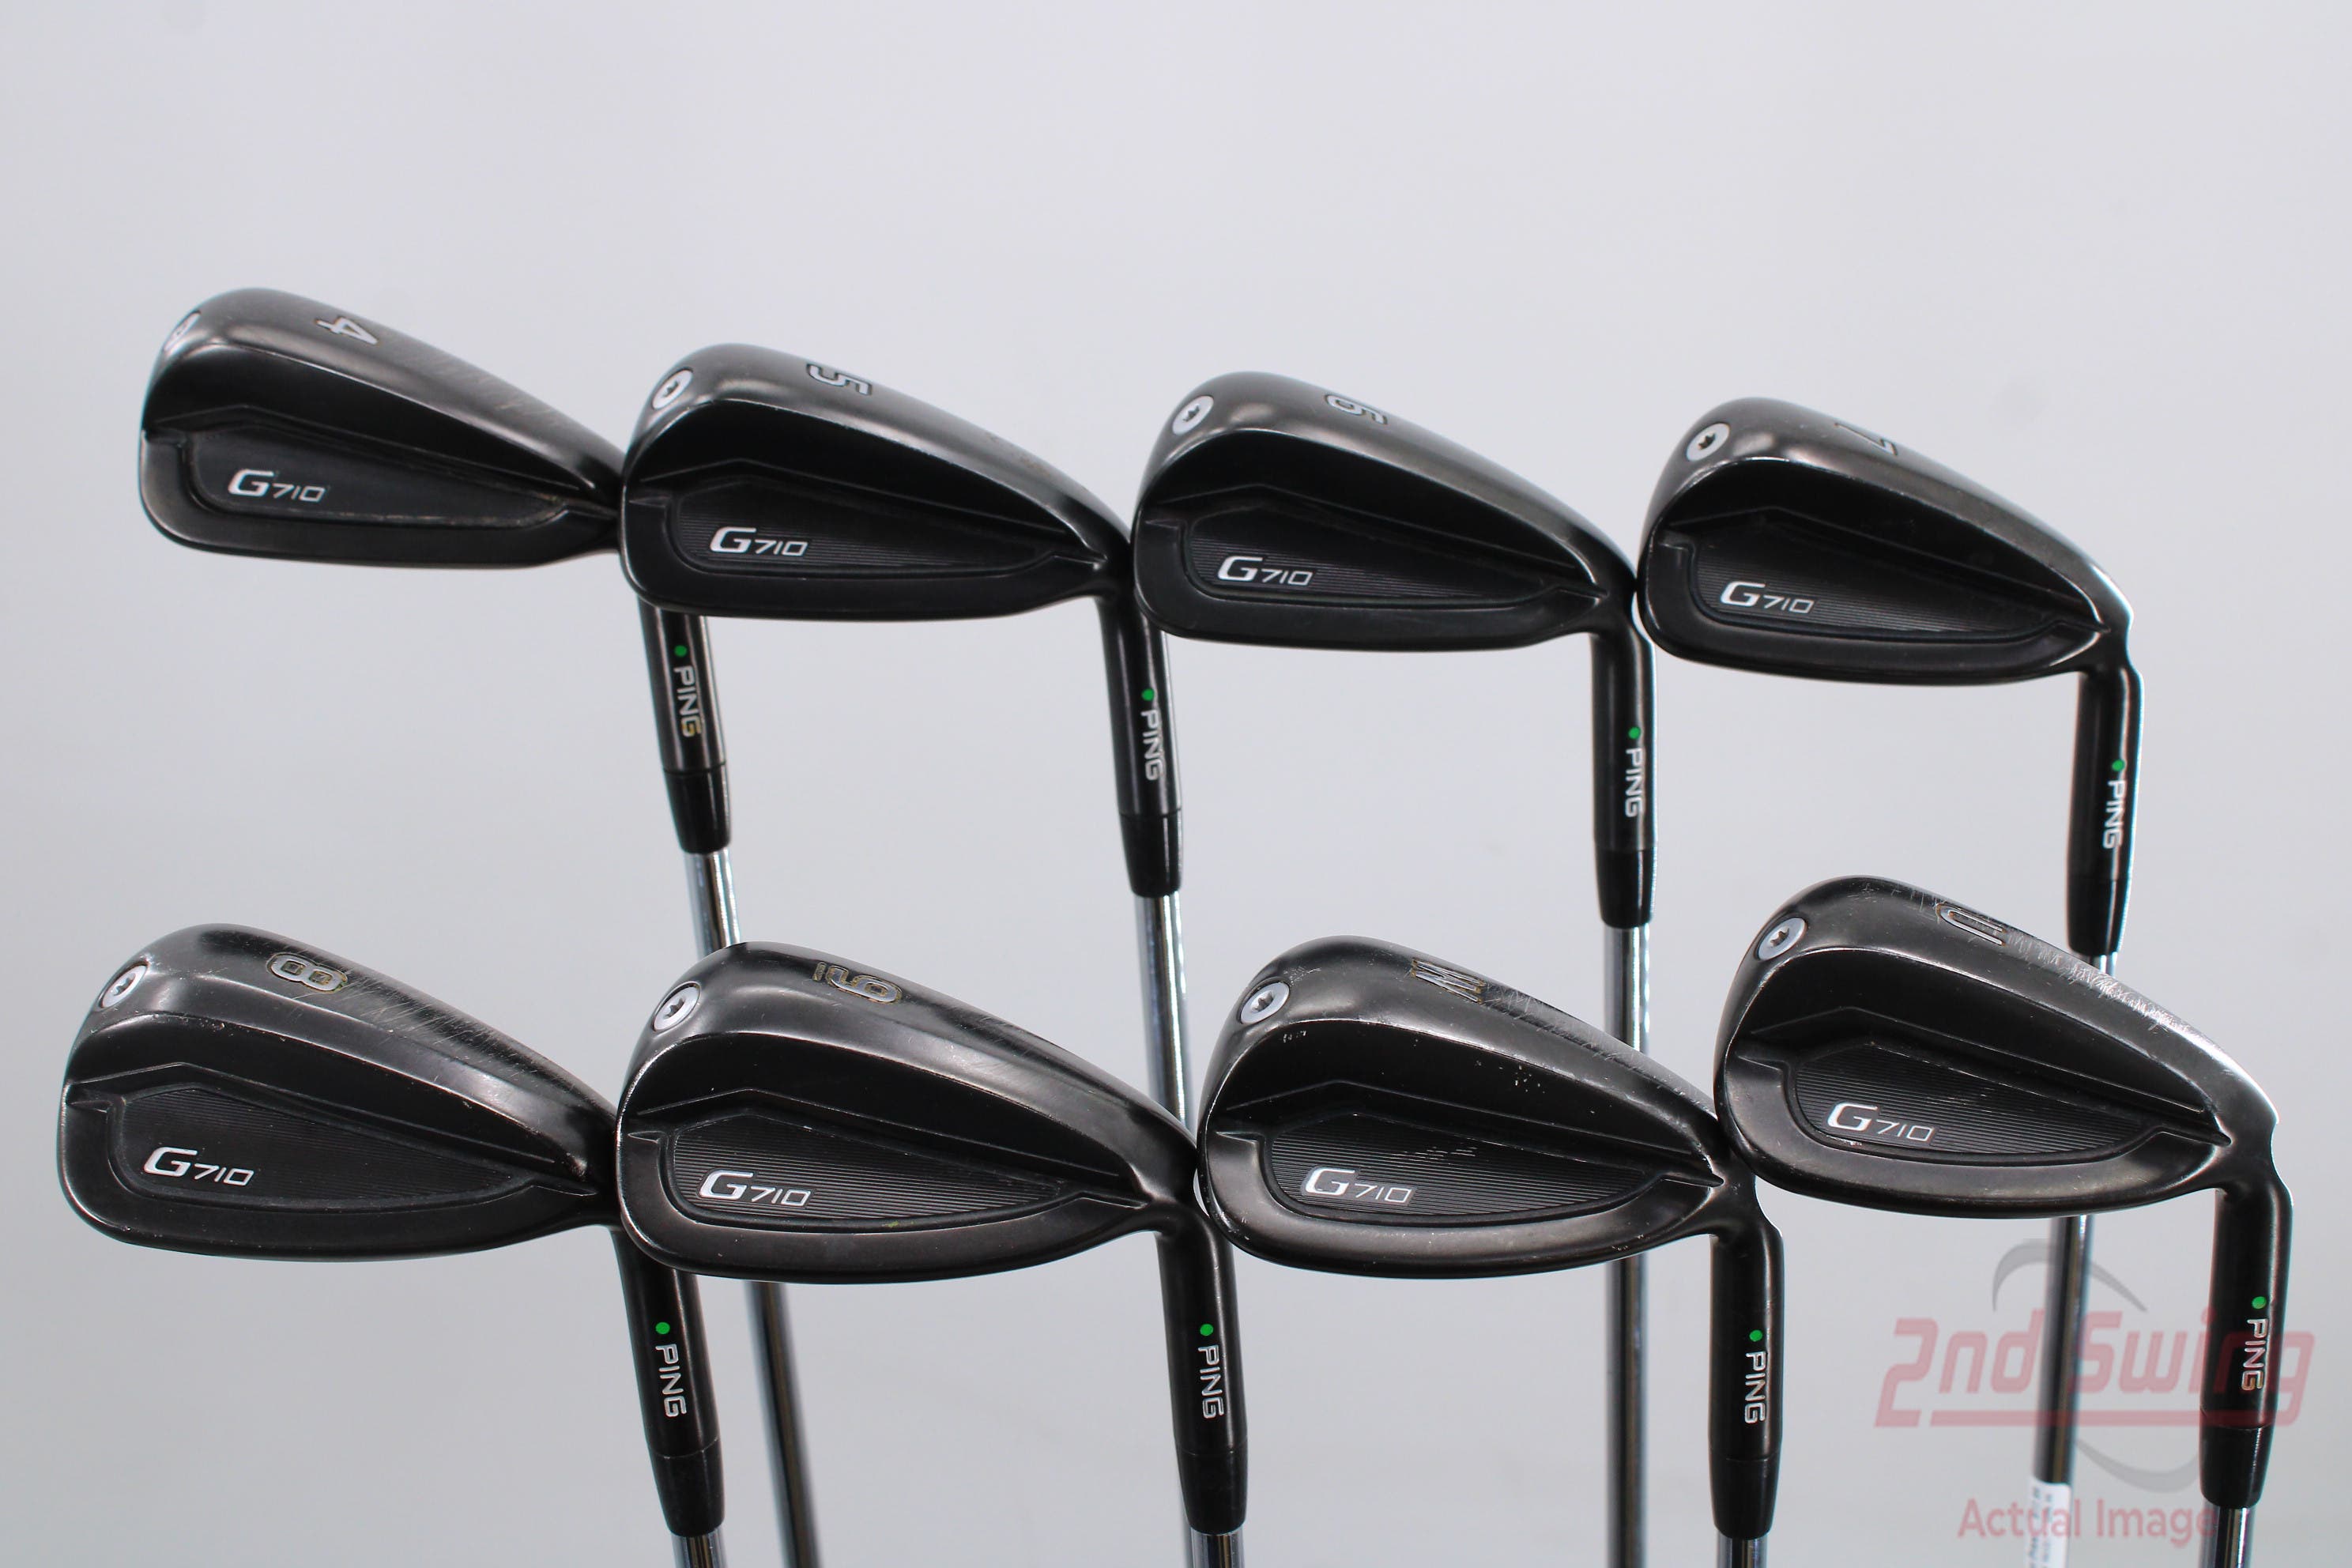 Ping G710 Iron Set (A-D2228145363) | 2nd Swing Golf